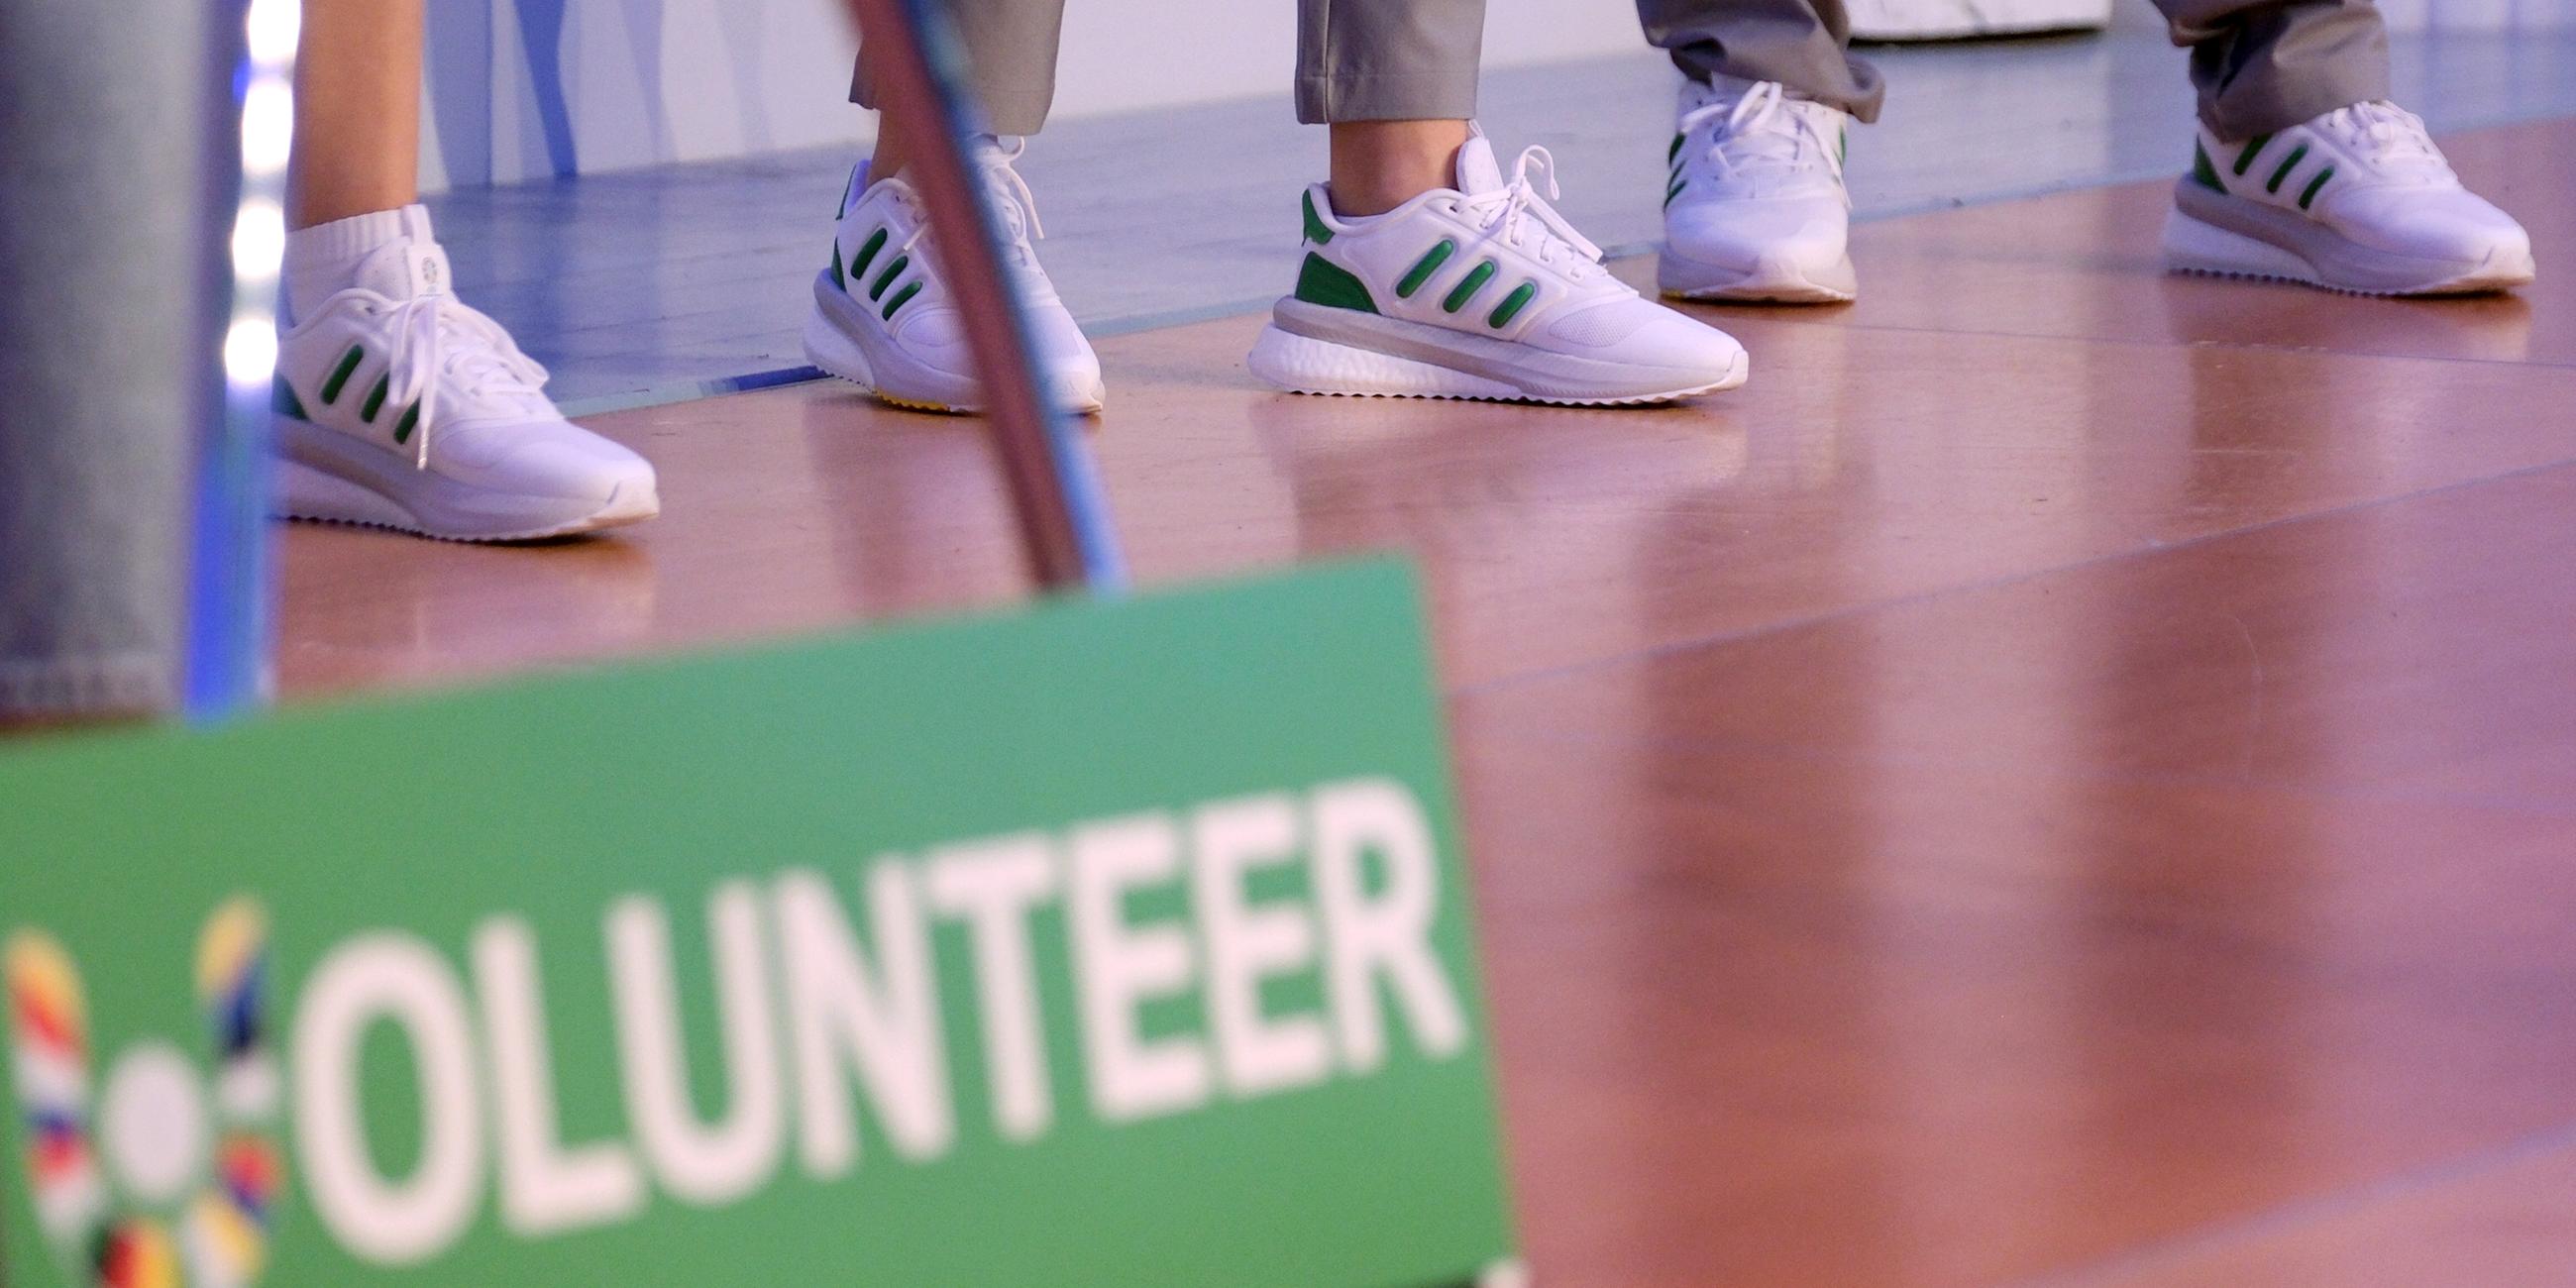 Im Vordergrund ein Schild mit der Aufschrift "Volunteer". Im Hintergrund Beine der ehrenamtlichen Helfer.